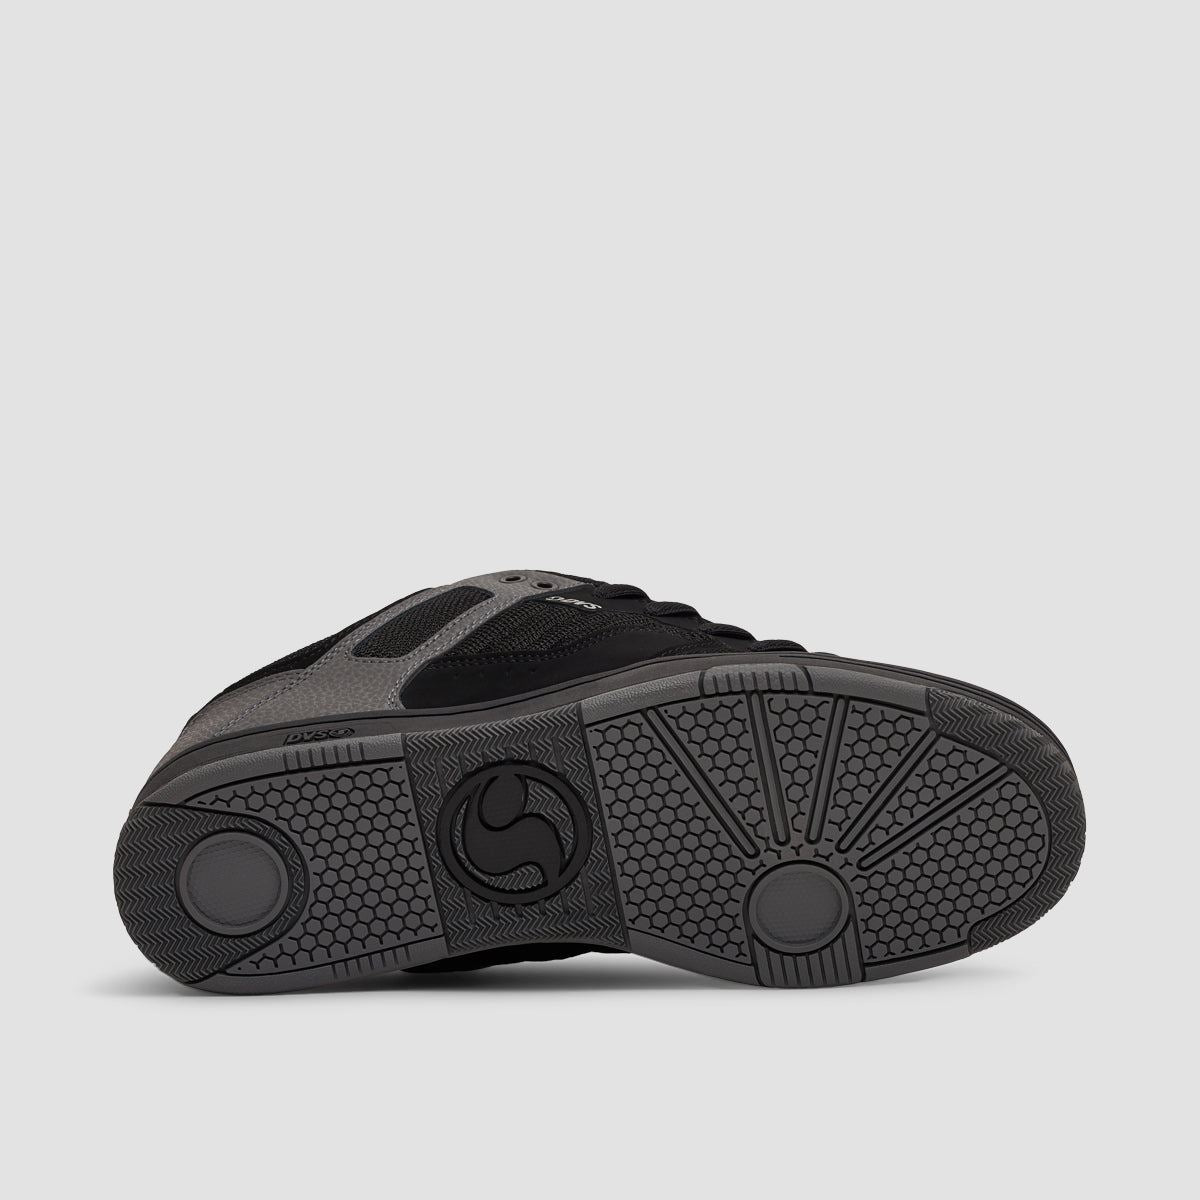 DVS Enduro 125 Shoes - Black/Charcoal/Lime Nubuck